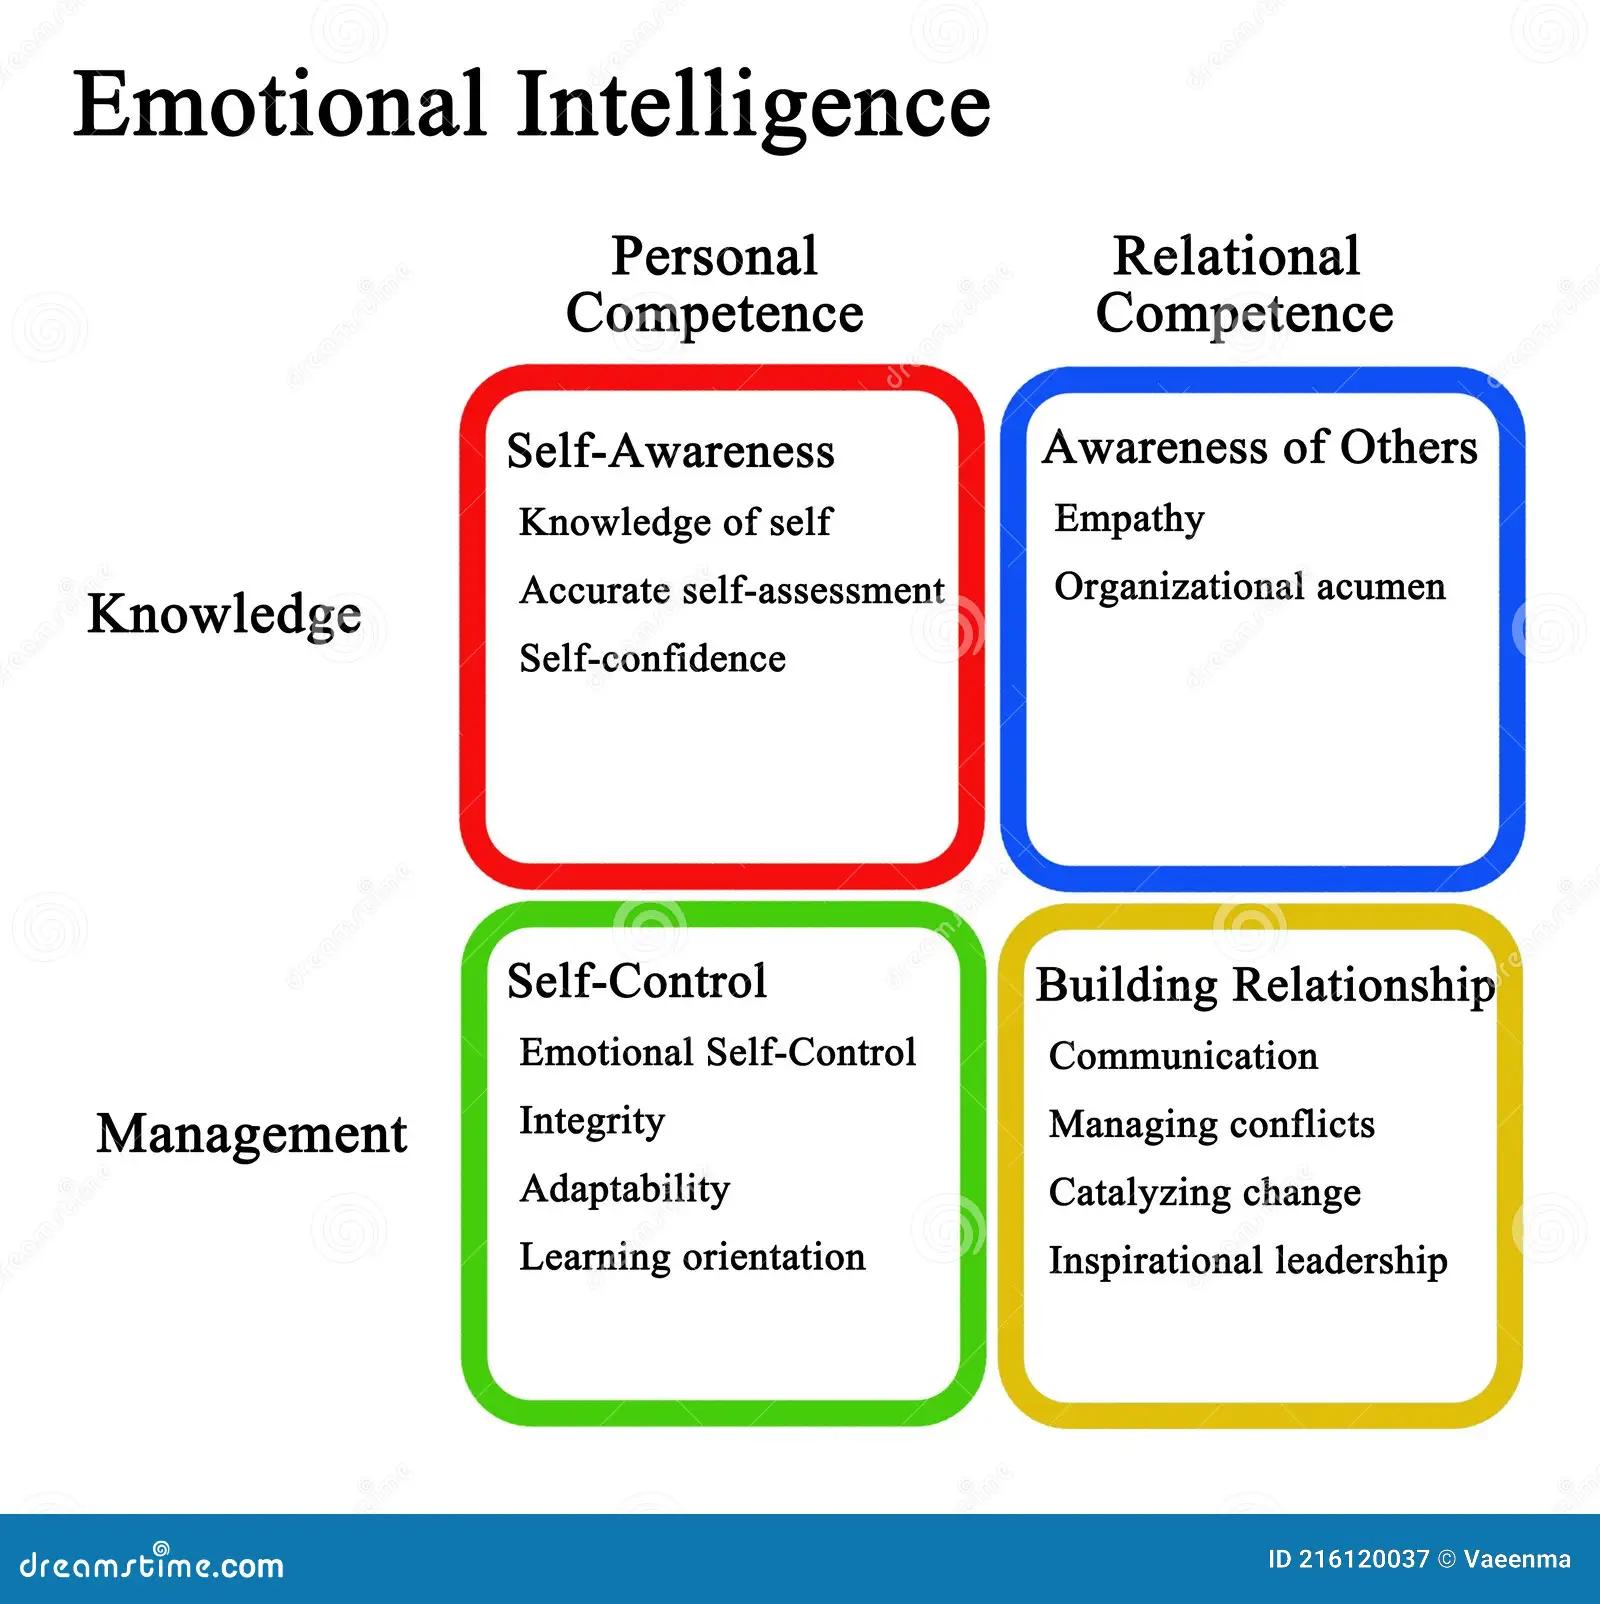 cuatro dominios de la inteligencia emocional - Cuáles son los cinco dominios de la inteligencia emocional y explicarlos